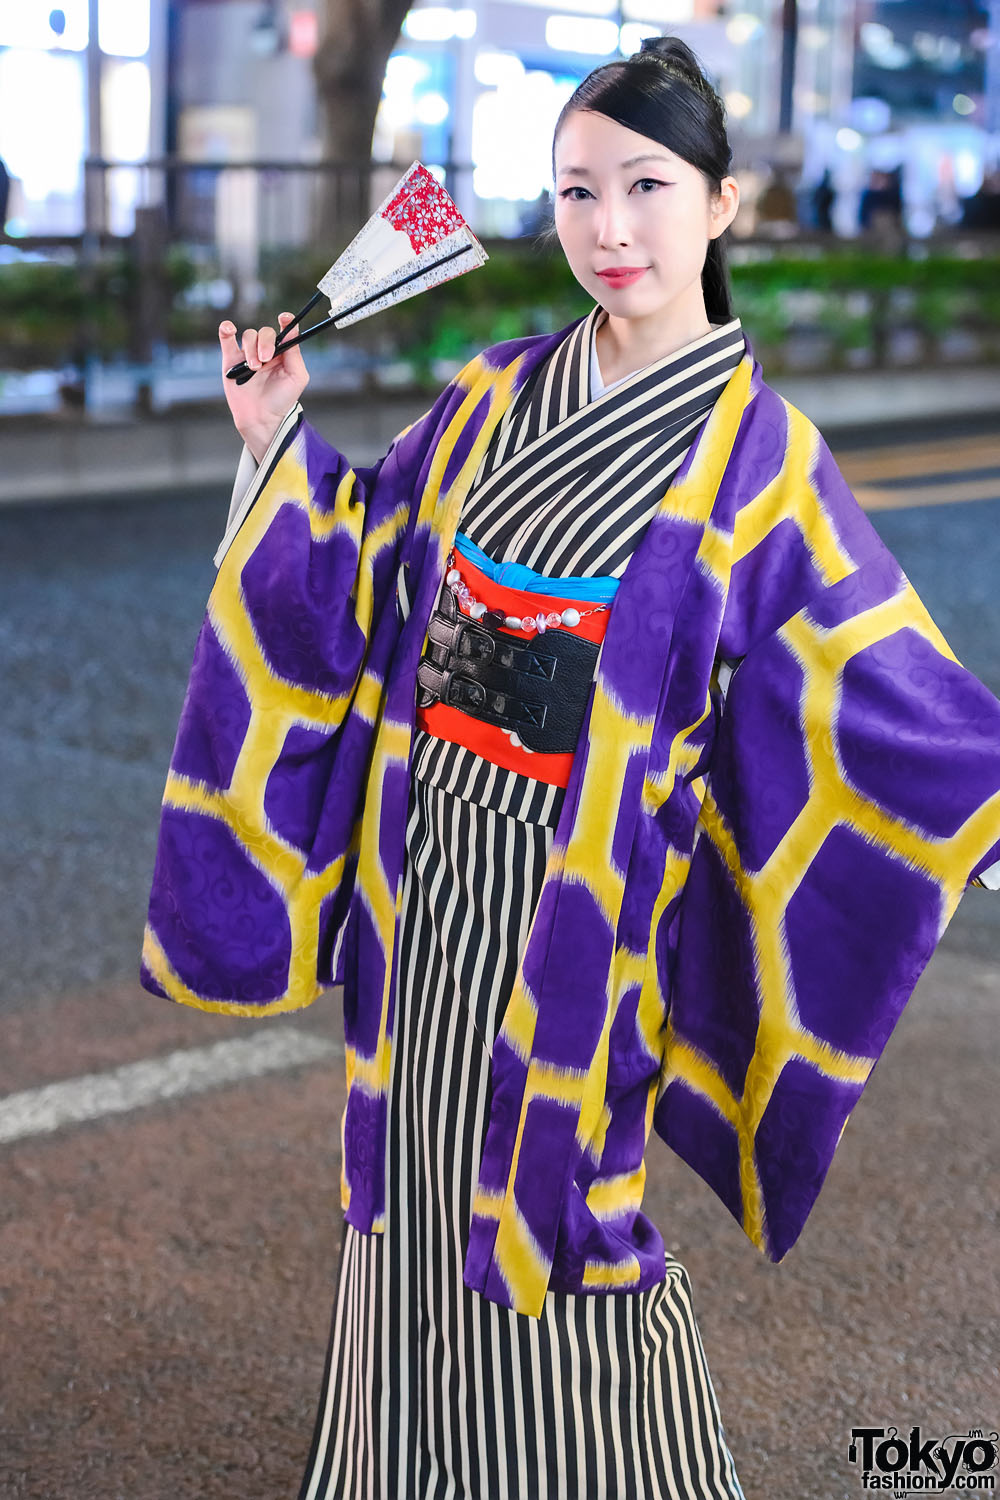 kimono inspired fashion